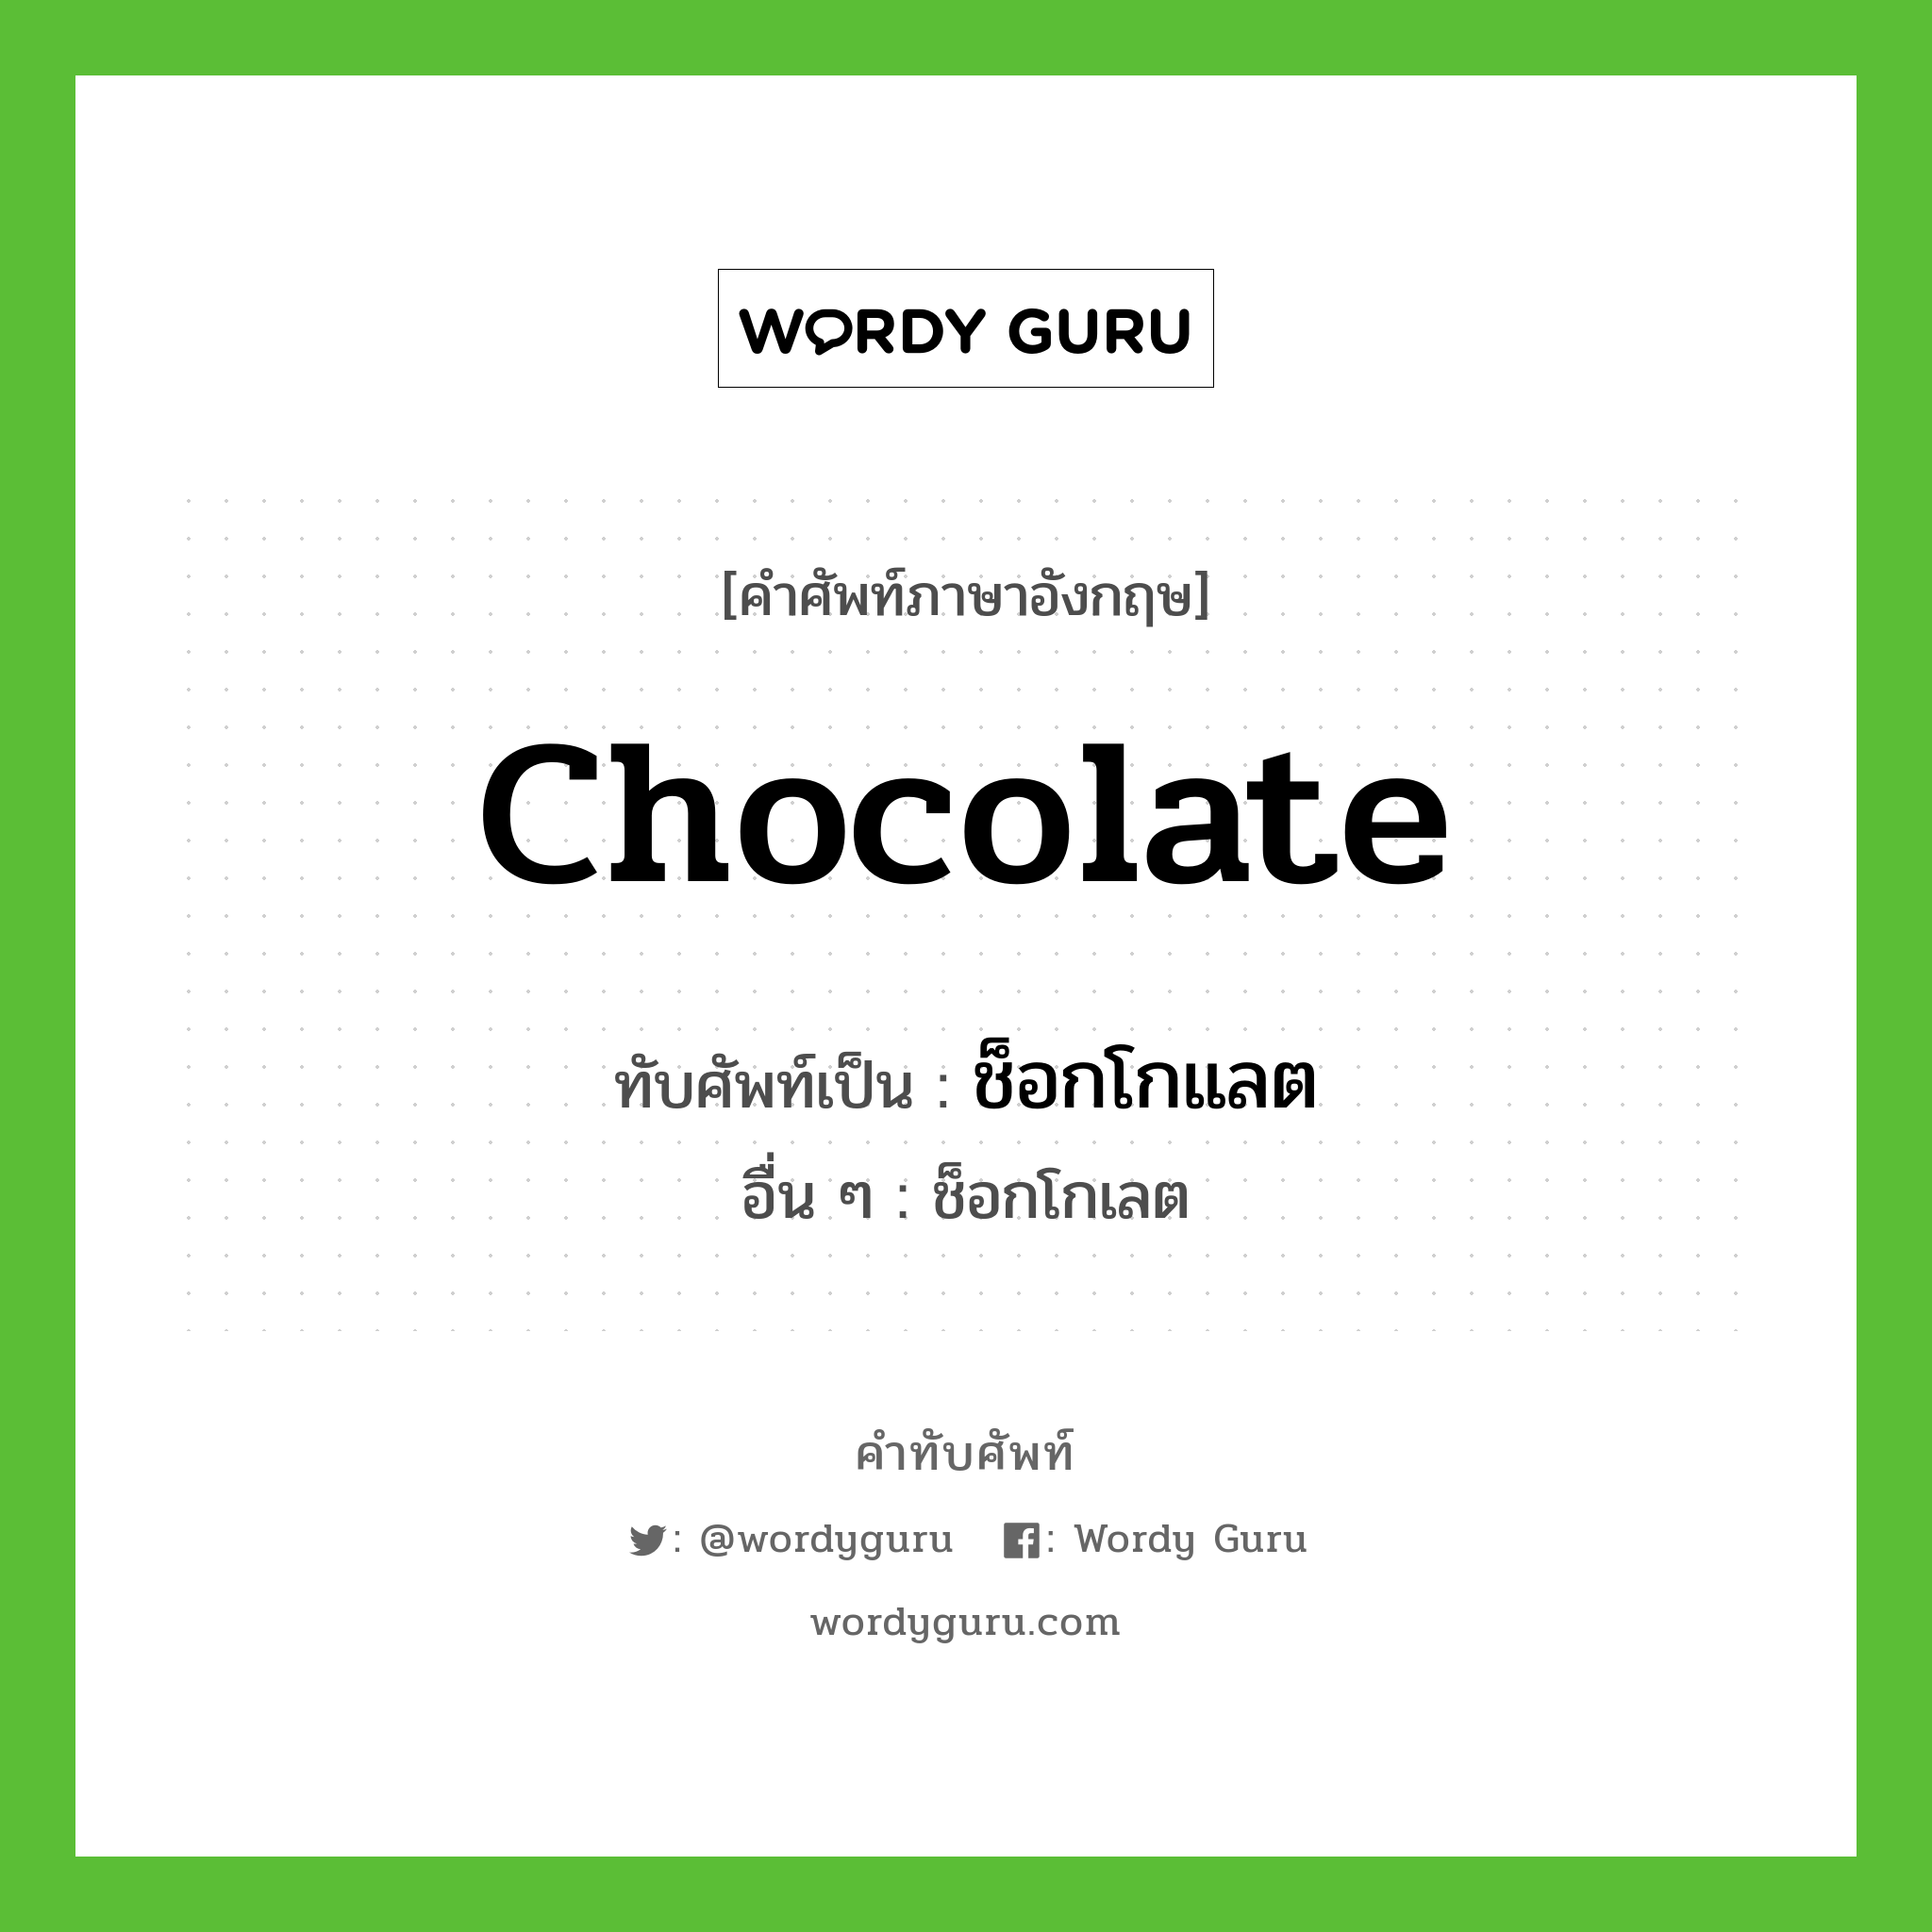 ช็อกโกแลต เขียนอย่างไร?, คำศัพท์ภาษาอังกฤษ ช็อกโกแลต ทับศัพท์เป็น chocolate อื่น ๆ ช็อกโกเลต